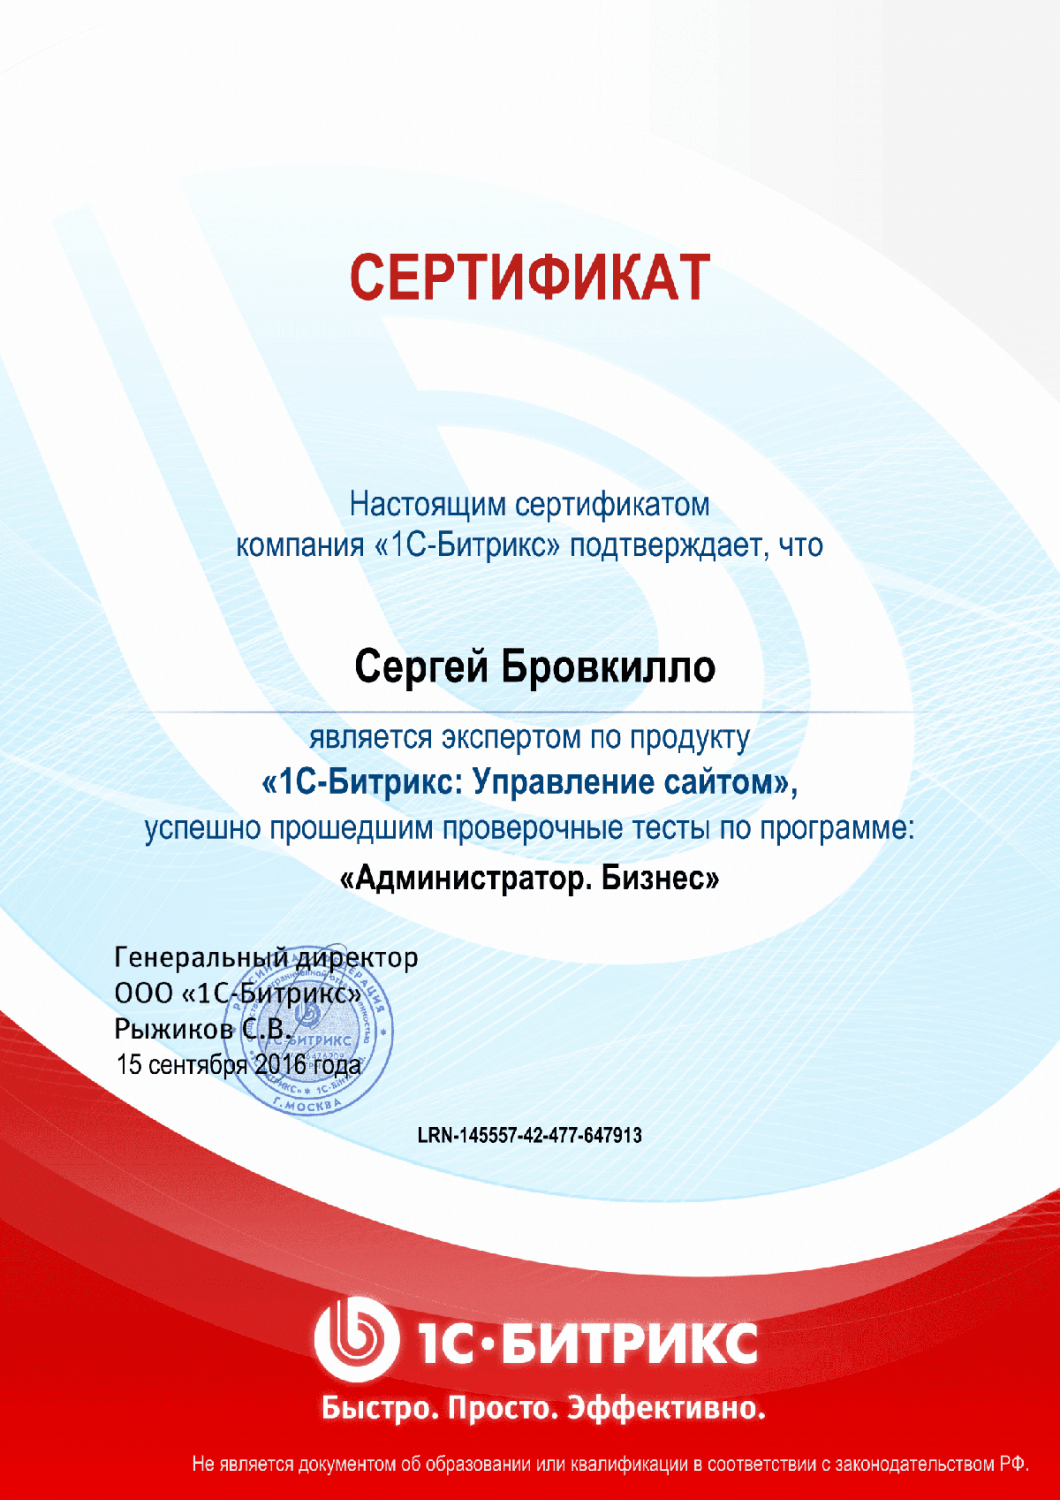 Сертификат эксперта по программе "Администратор. Бизнес" в Иркутска